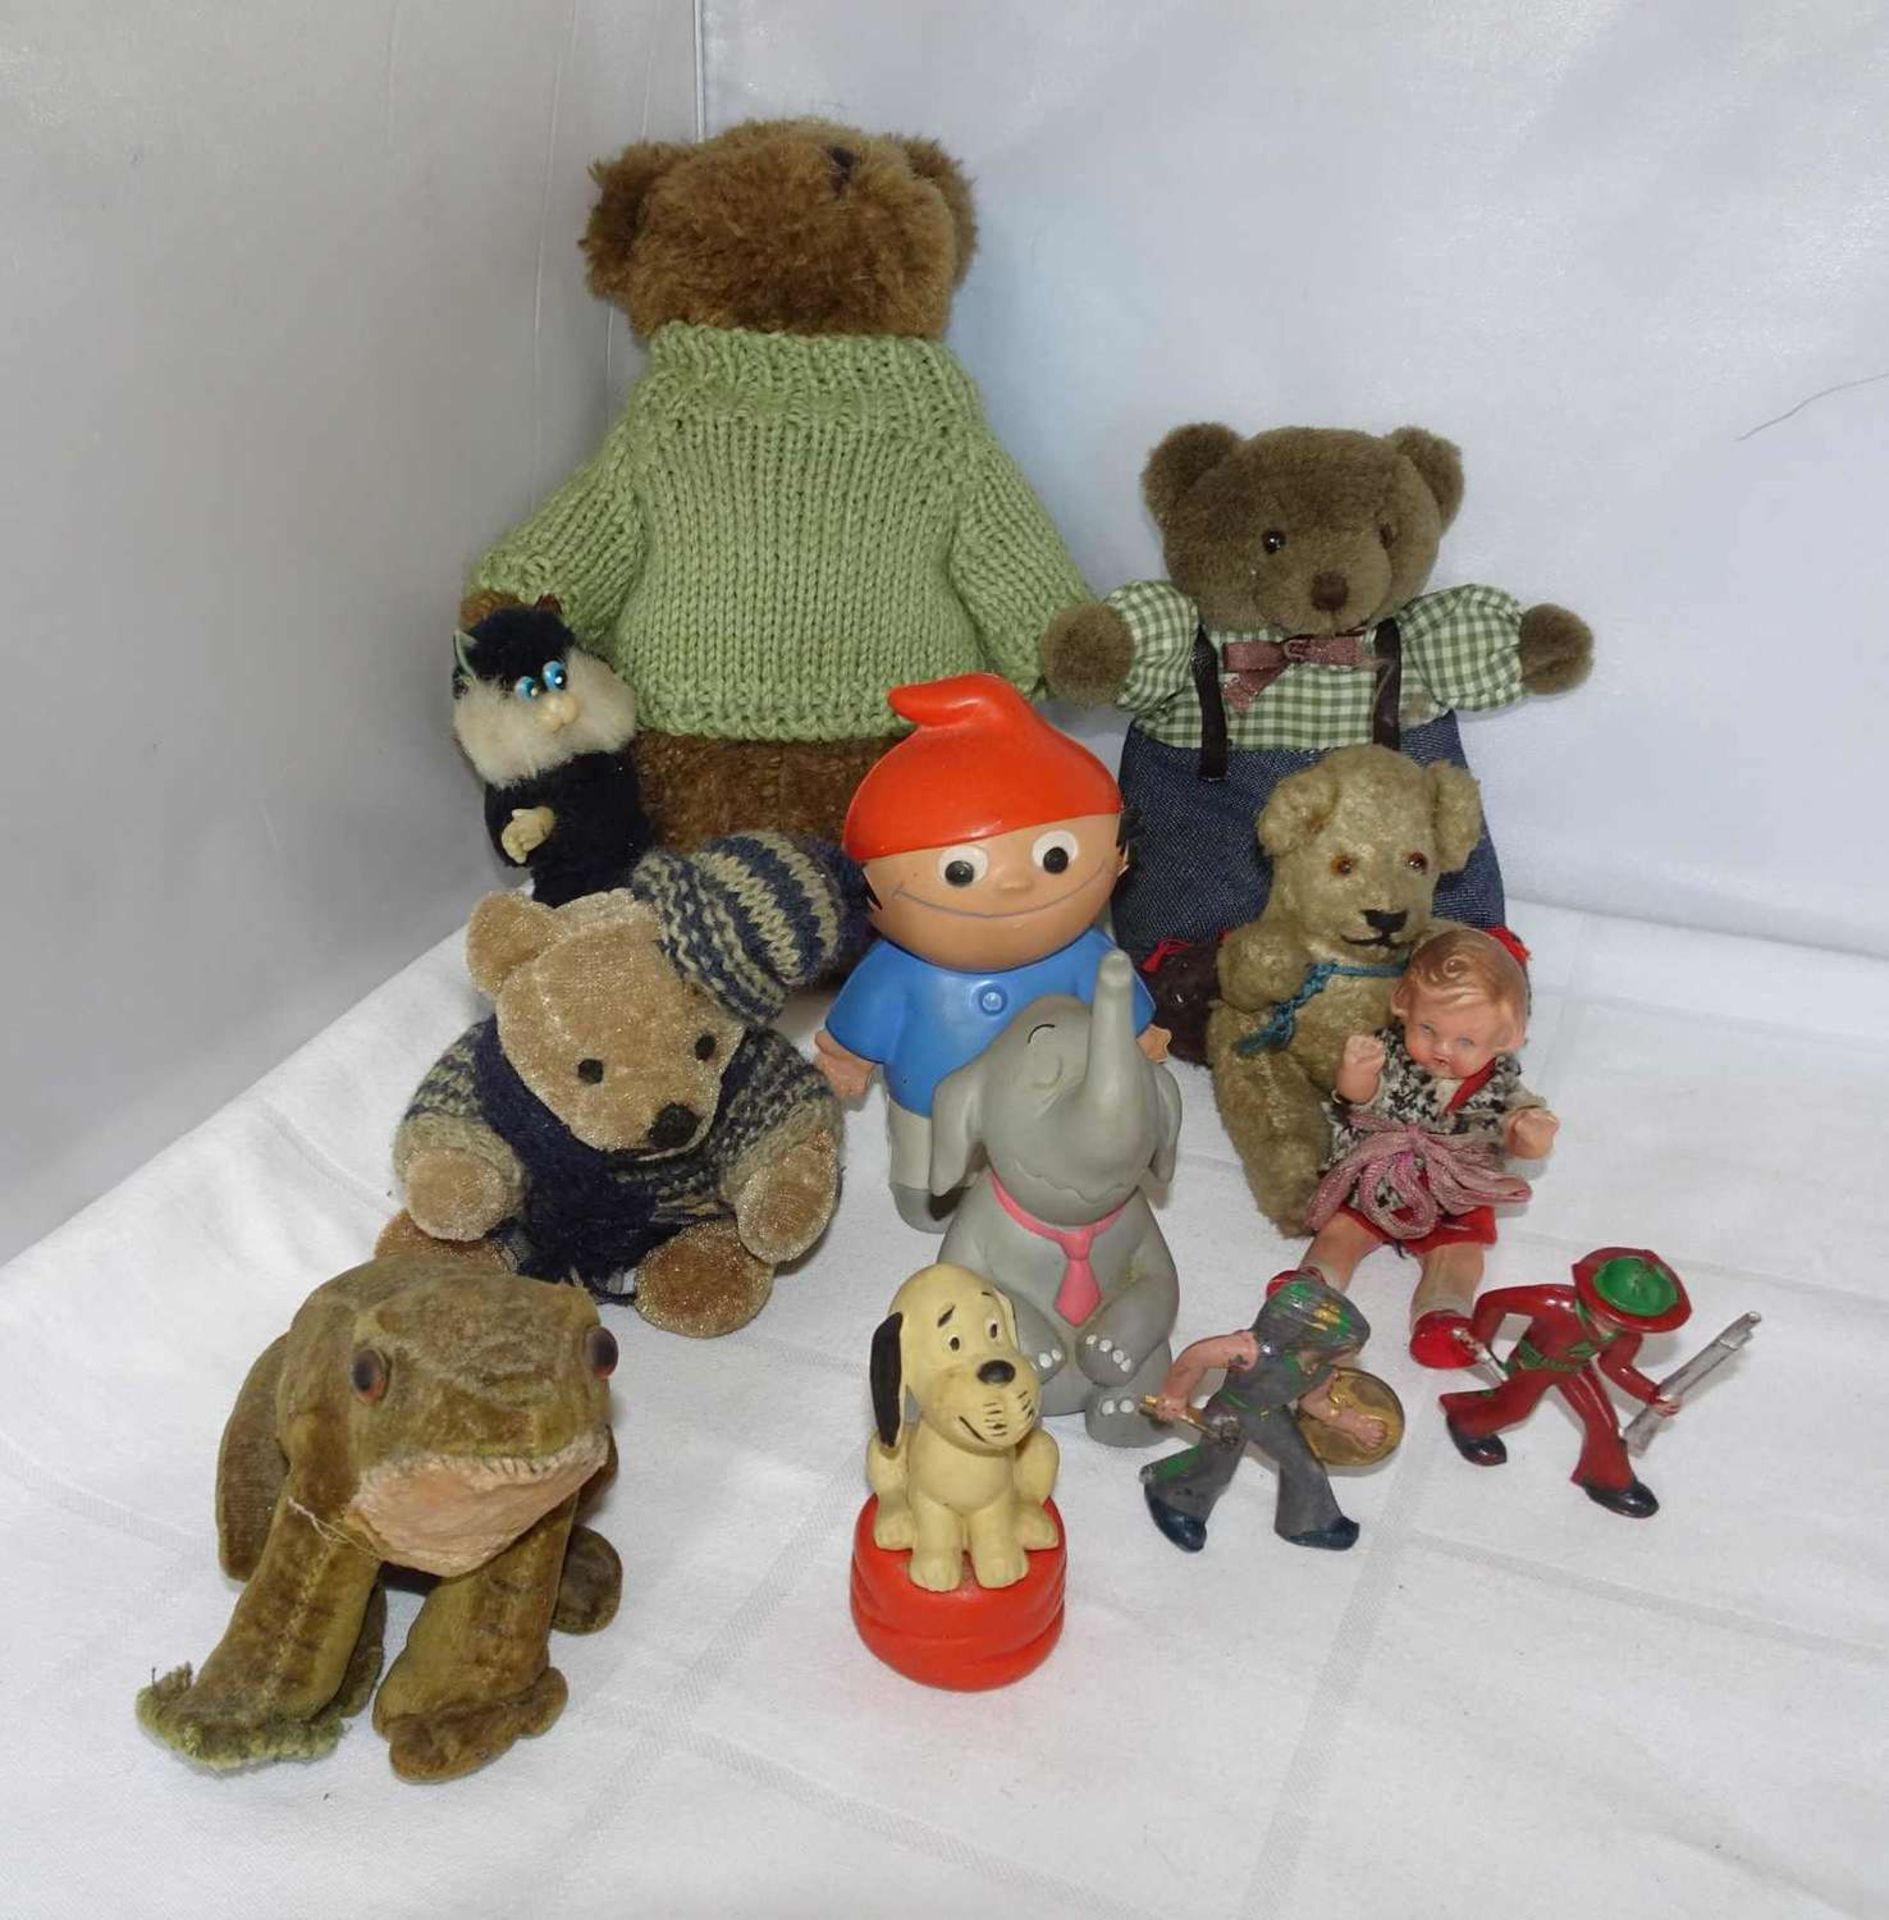 Lot Spielzeug, dabei Teddies, 1 Frosch & 1 Teddy (alt, fest gestopft), sowie 1 Mainzelmännchen und